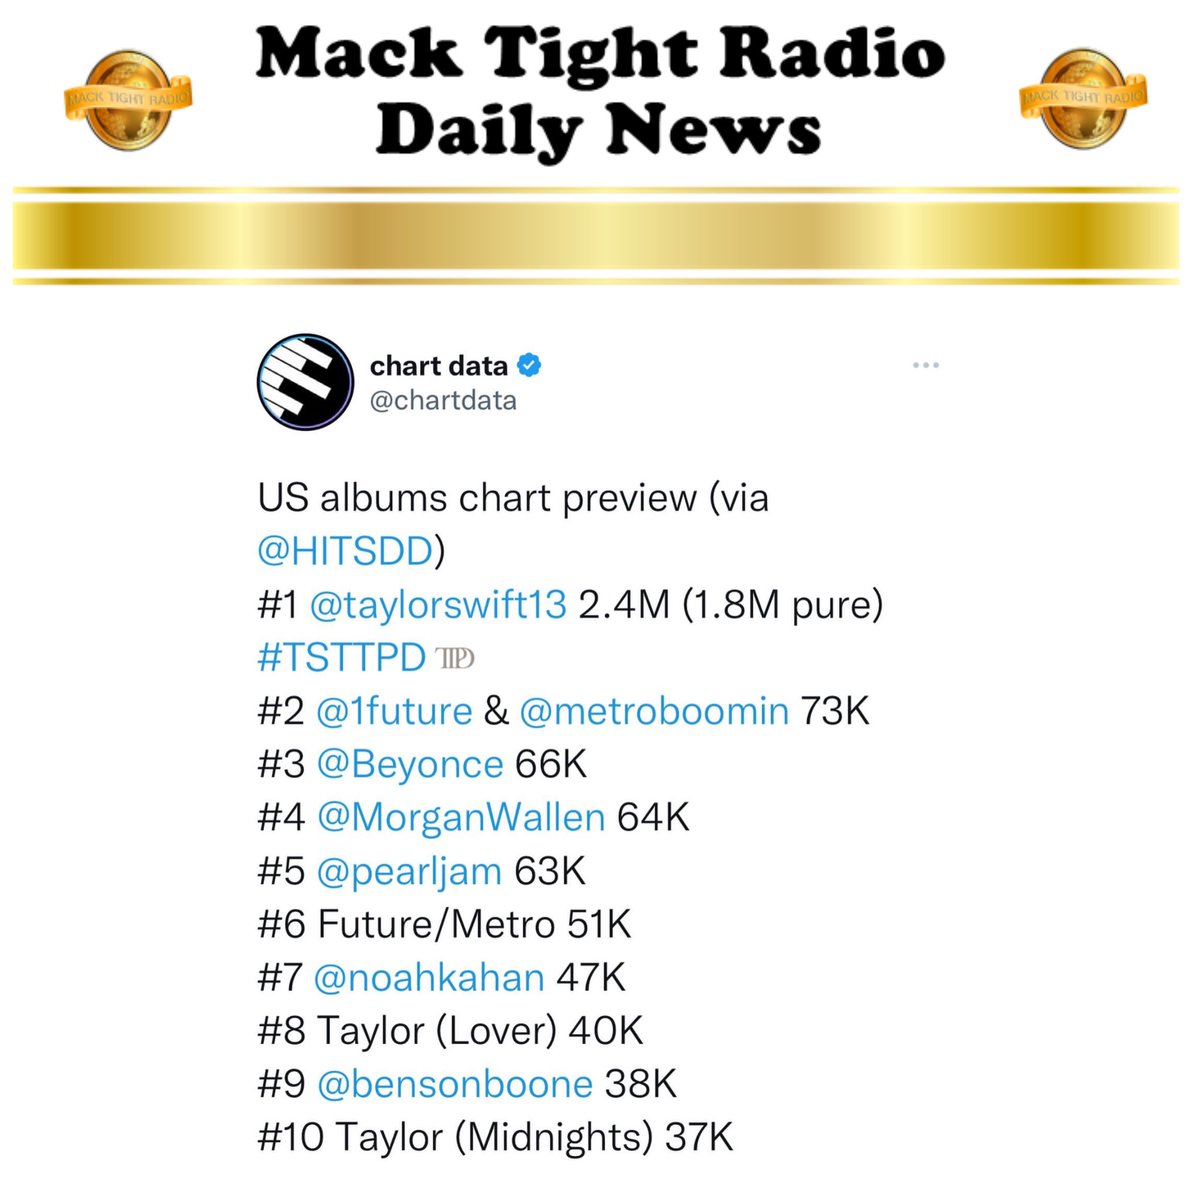 MackTightRadio tweet picture